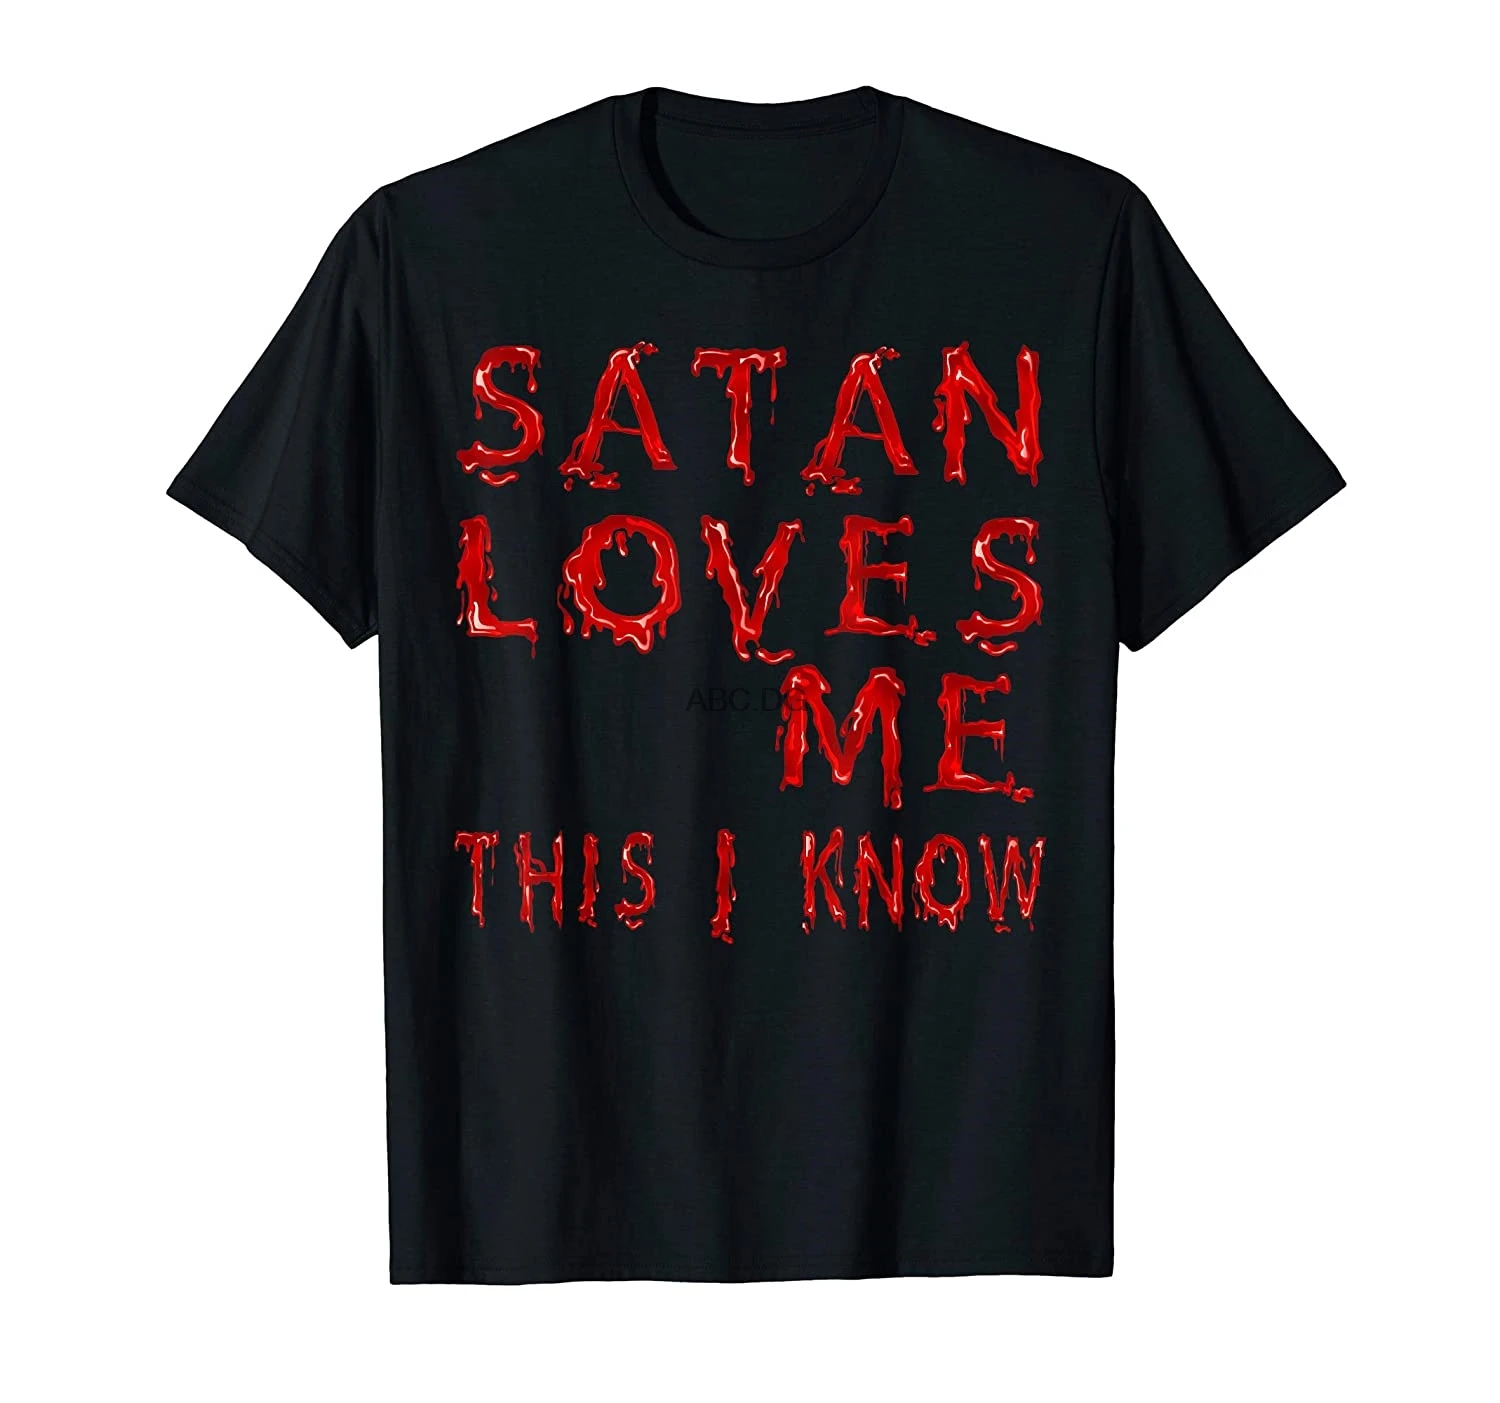 Меня любит сатана песня